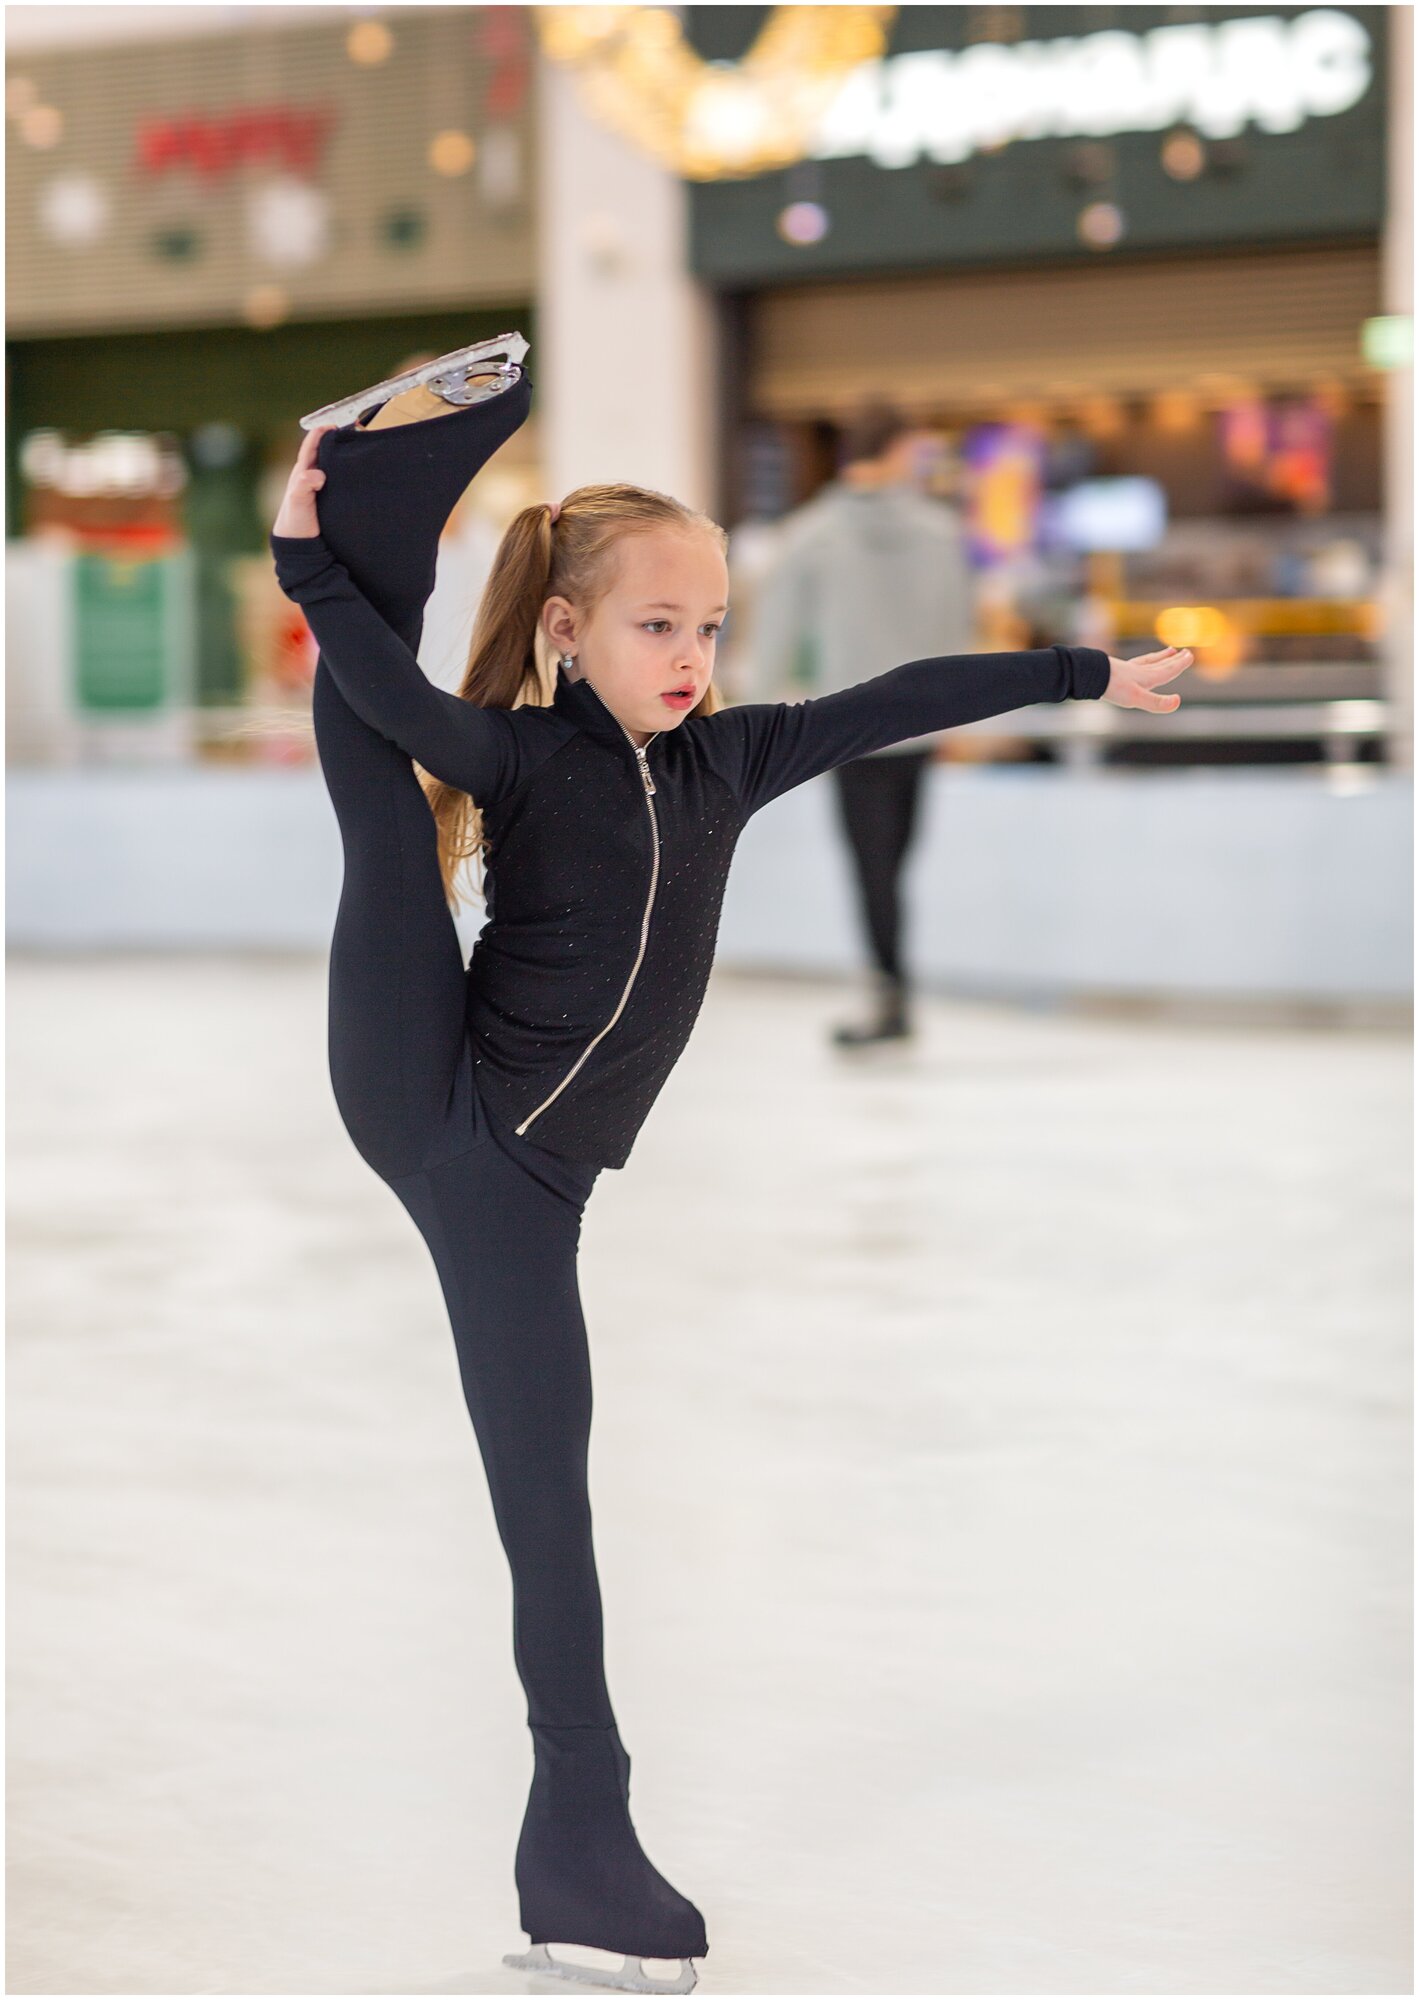 Характеристики модели Костюм для фигурного катания для девочек LULU ice story — Спортивные костюмы — Яндекс Маркет